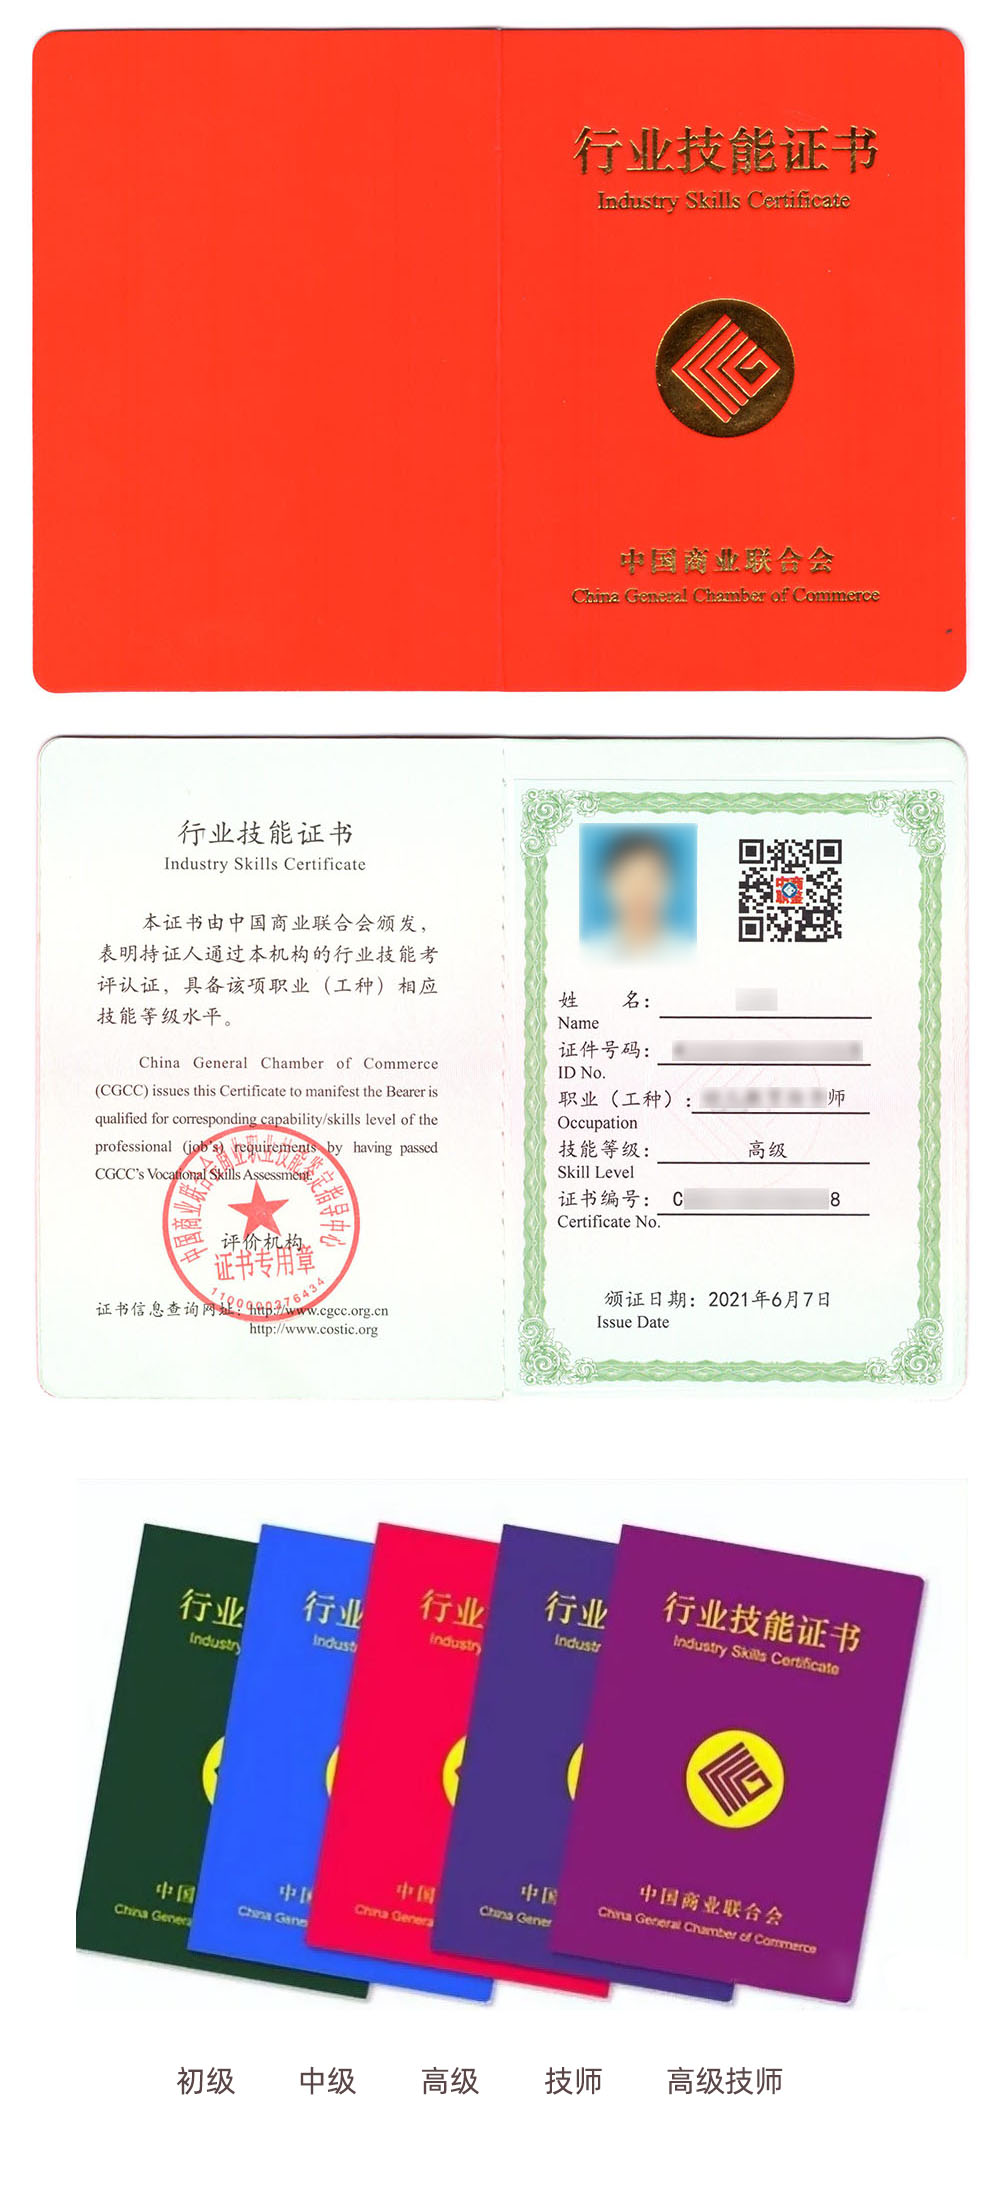 中国商业联合会商业职业技能鉴定中心 行业技能证书 商务谈判证证书样本